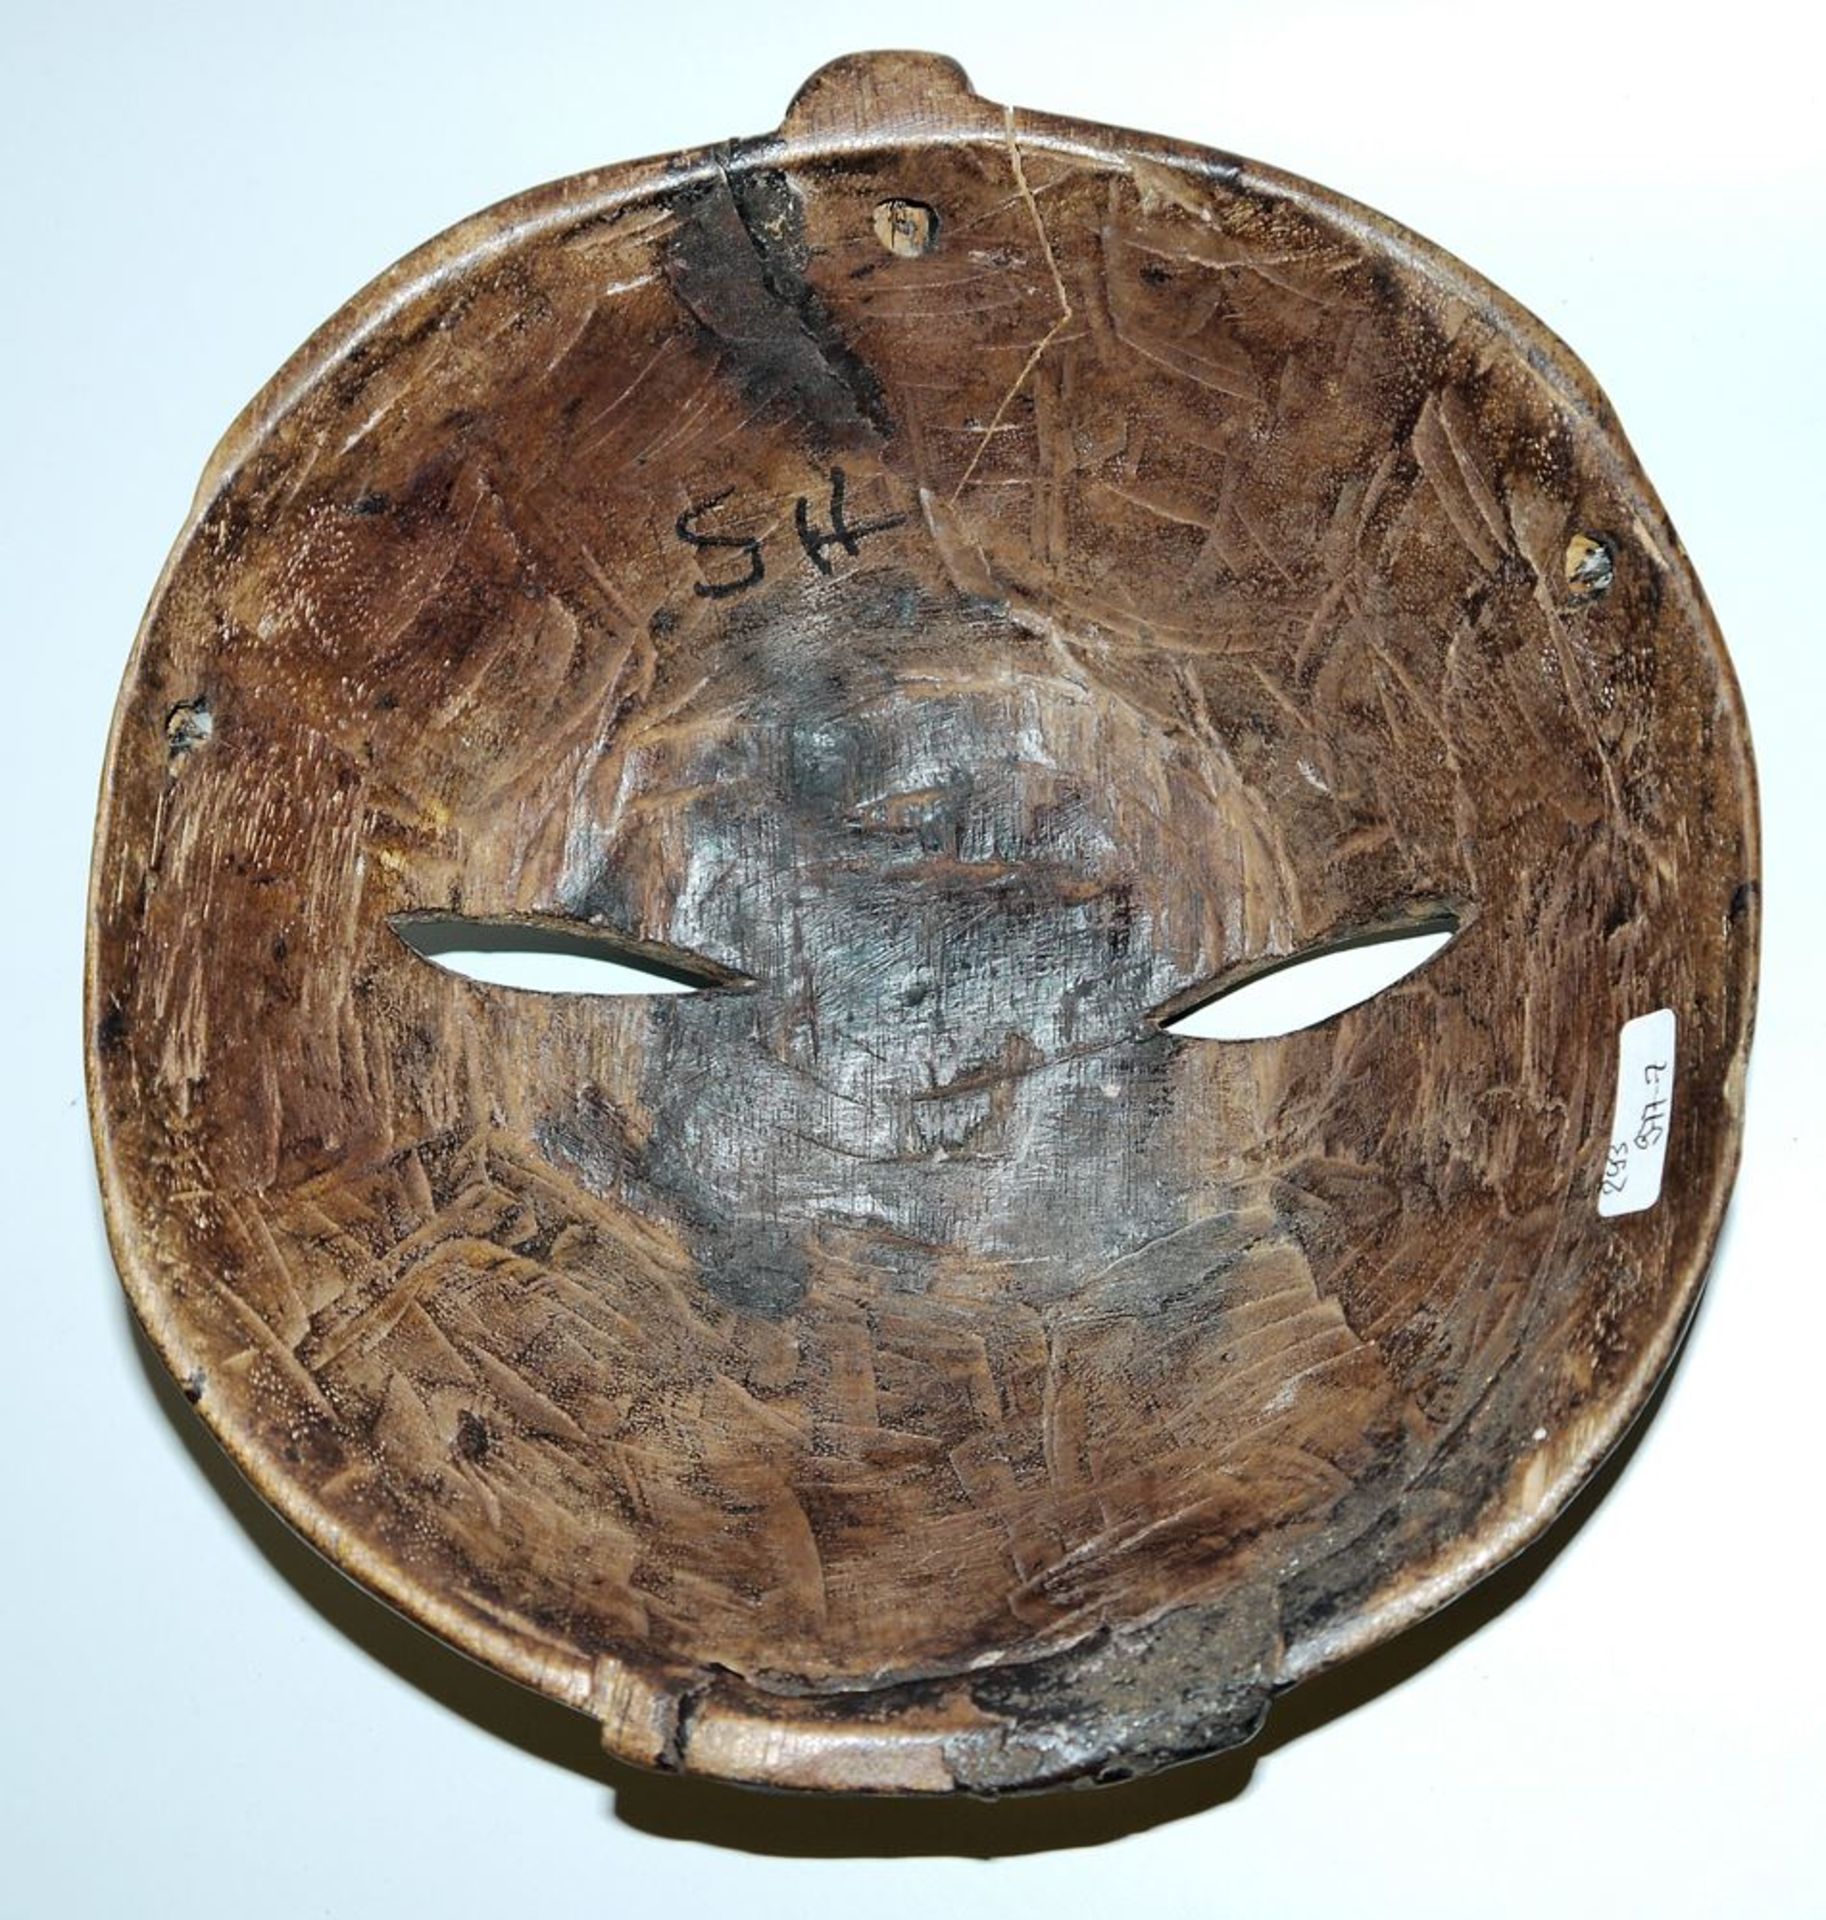 Kifweaving mask of the Luba, Congo - Image 2 of 2